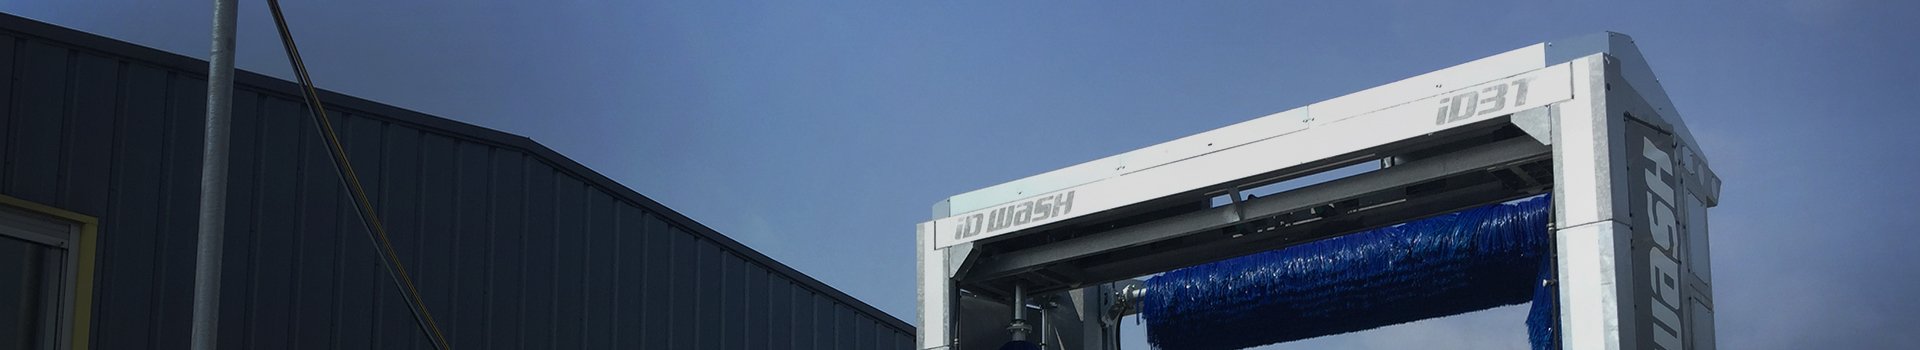 Portique de lavage poids lourds camion - transporteur de marchandise